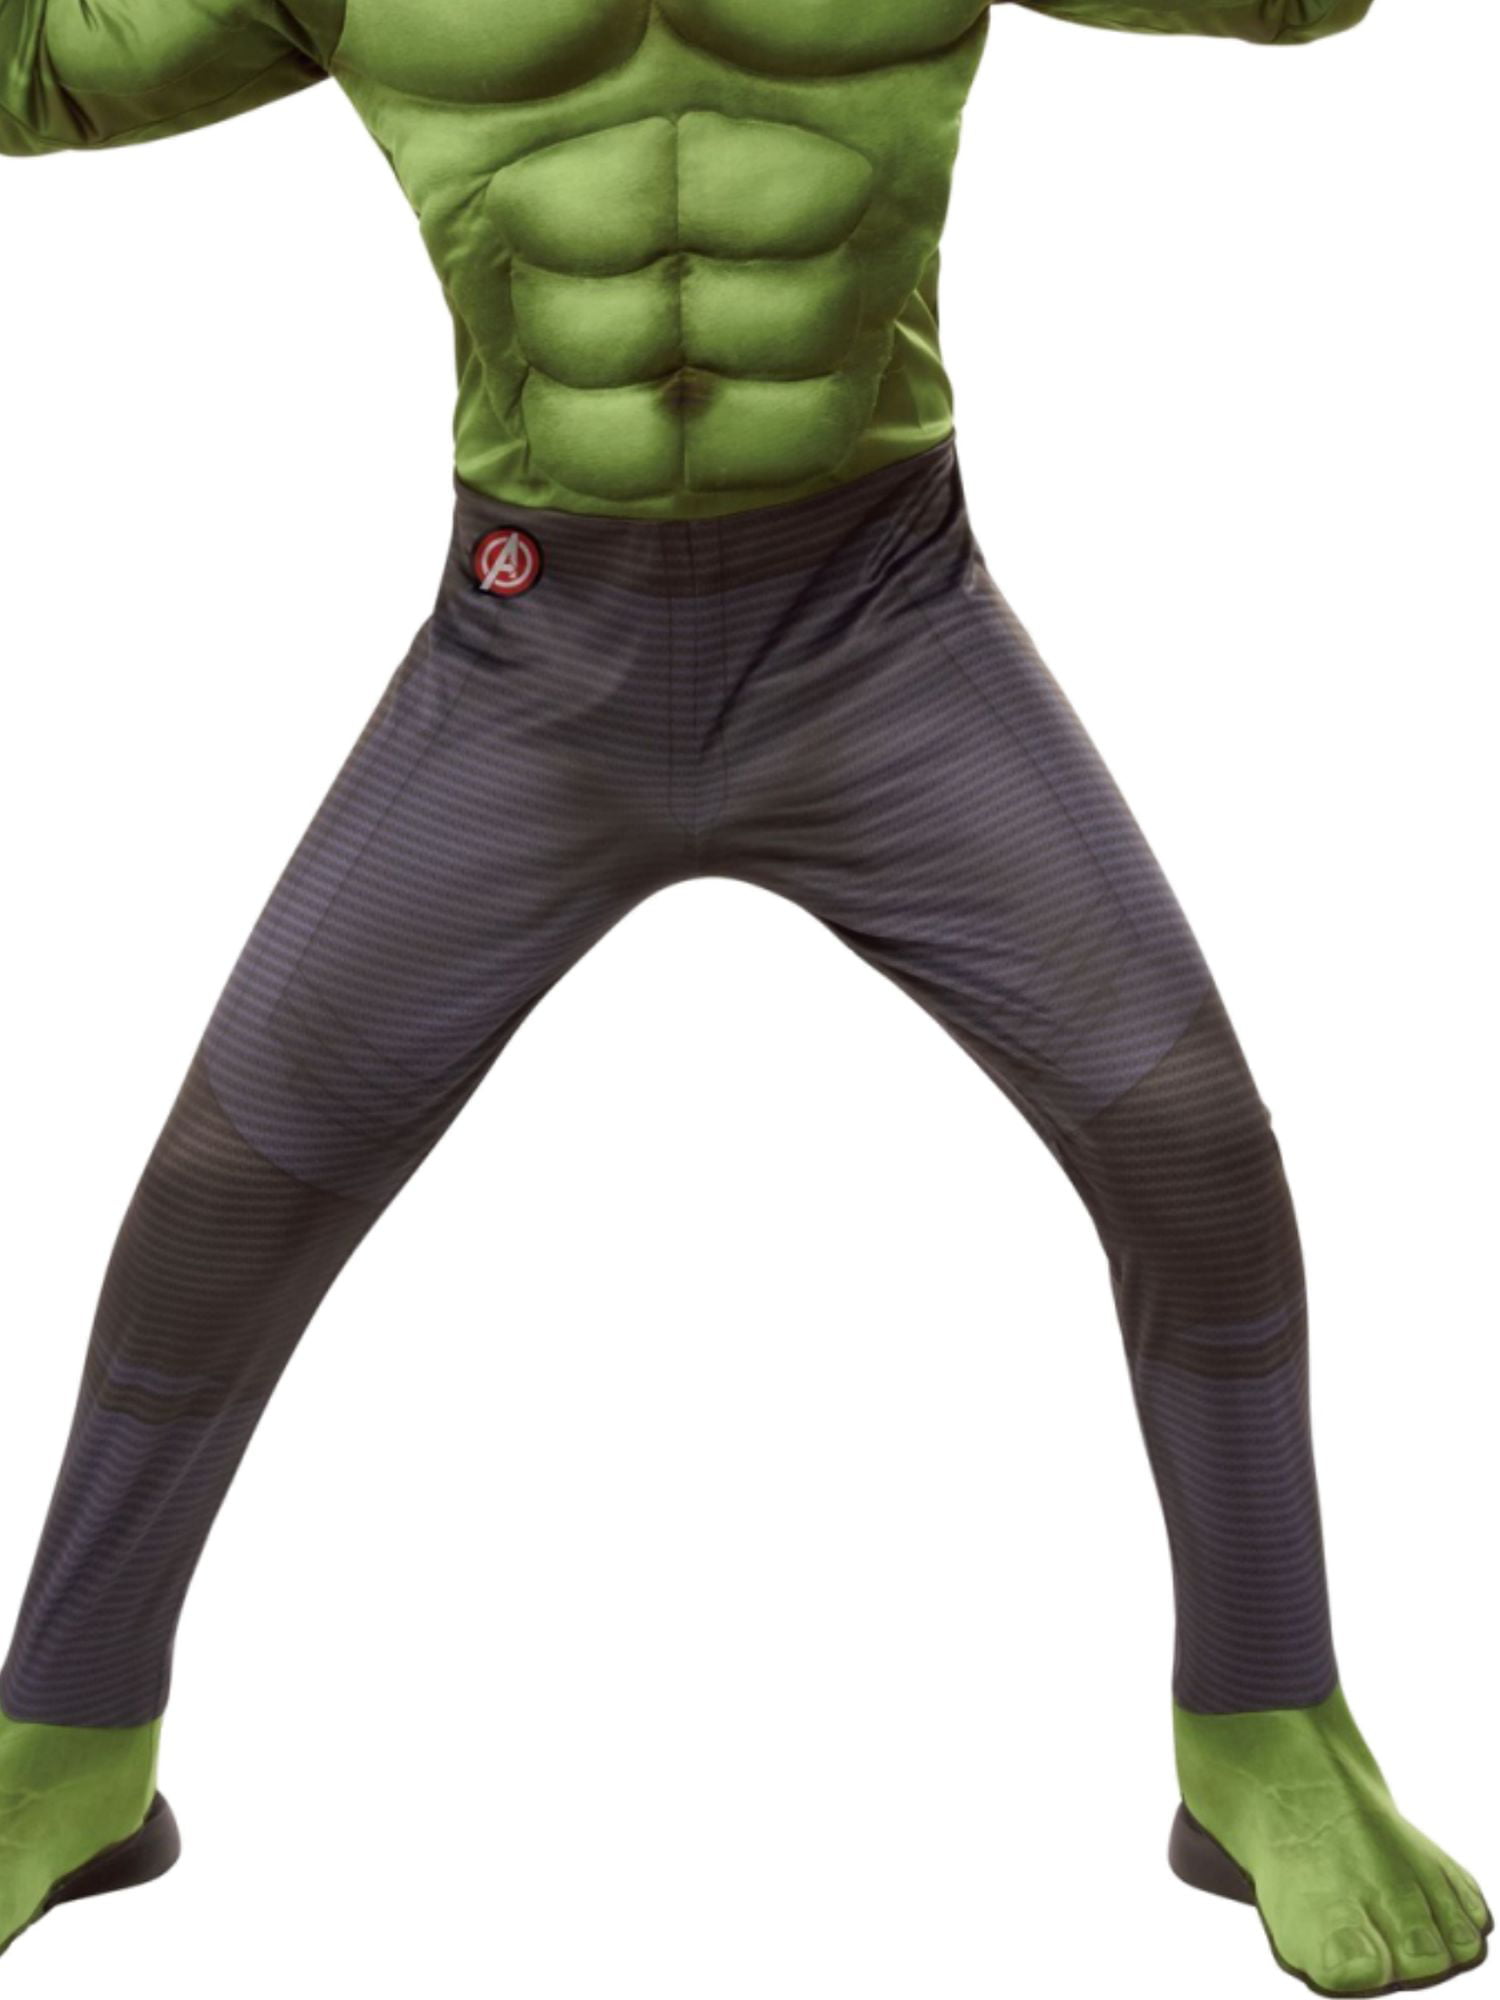 Avengers Endgame Hulk Team Suit Deluxe Boys Costume 